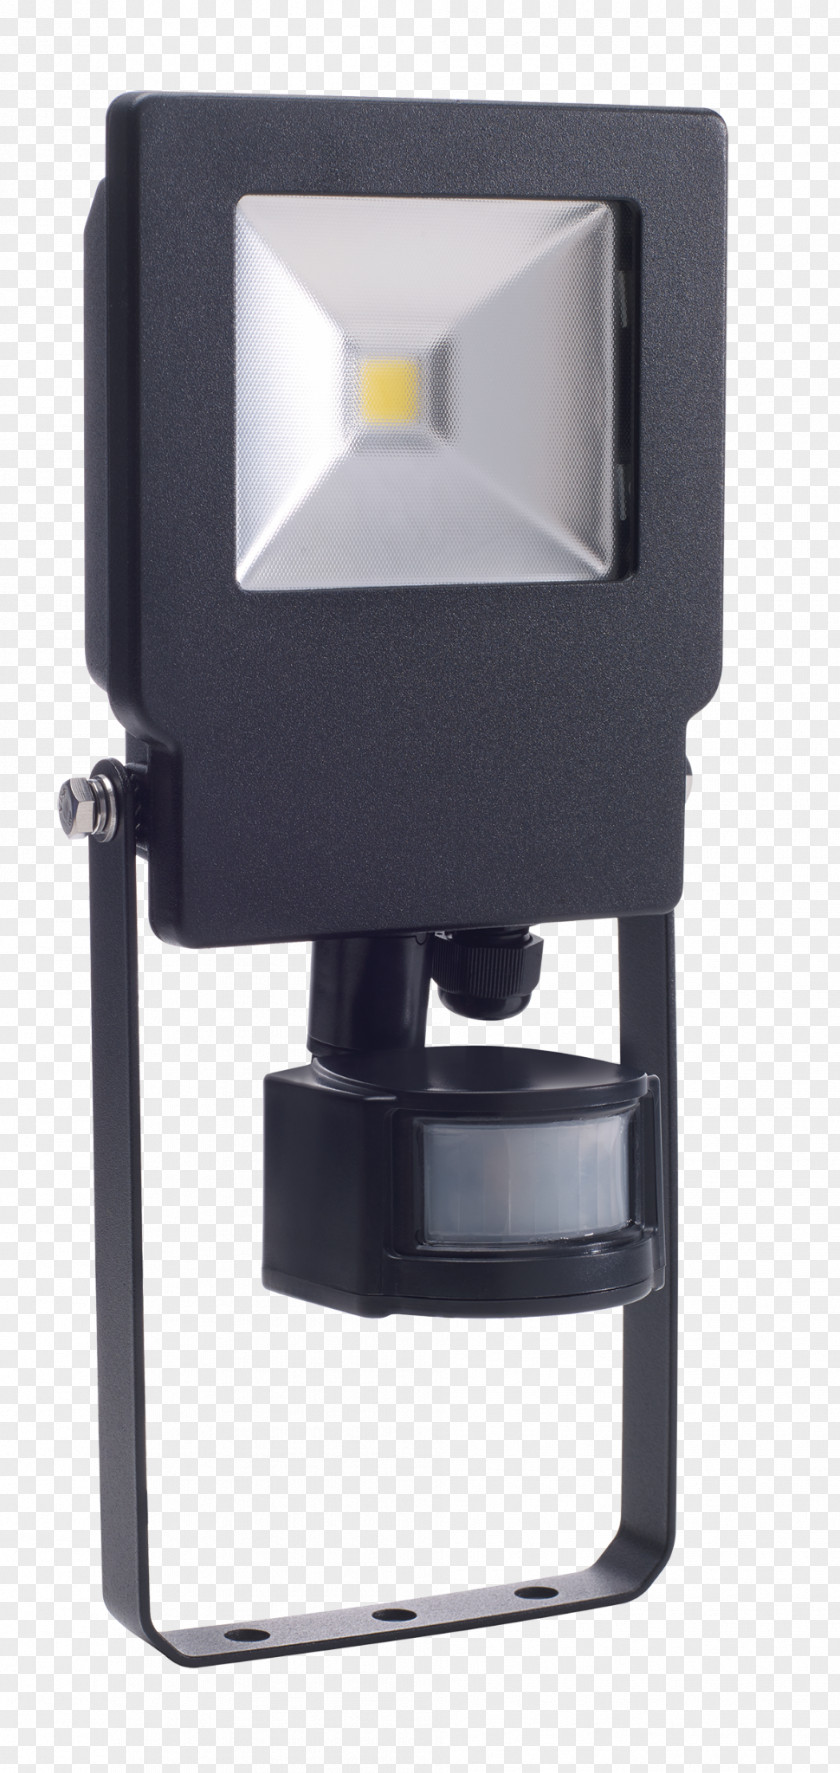 Electricity Supplier Promotion Floodlight Lighting Light-emitting Diode Timeguard Ltd PNG